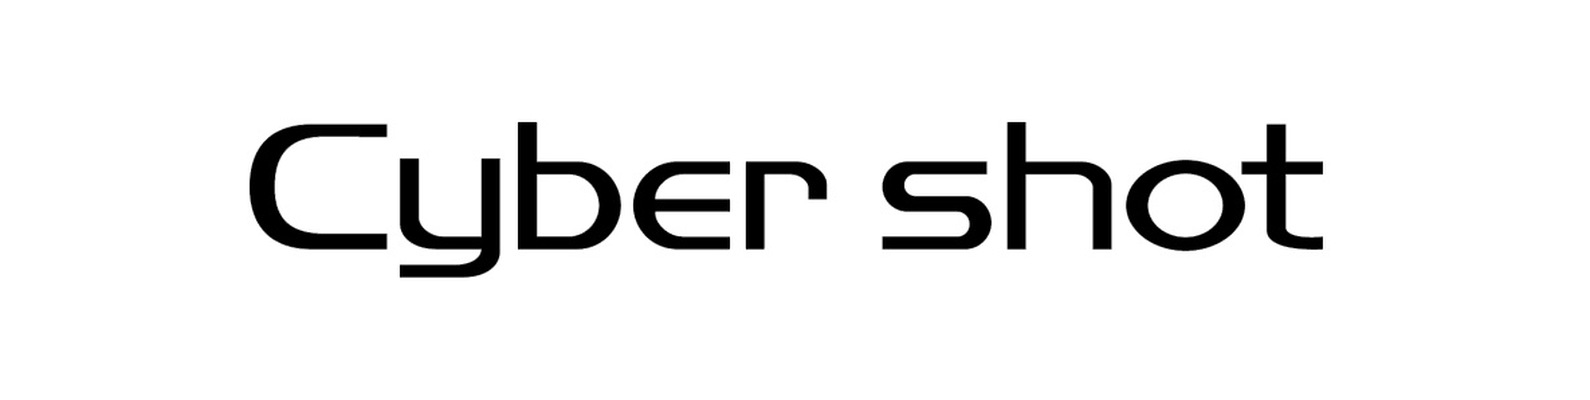 Sony DSC - Sony Digital Still Camera - Sony Cyber-shot - серия цифровых фотокамер